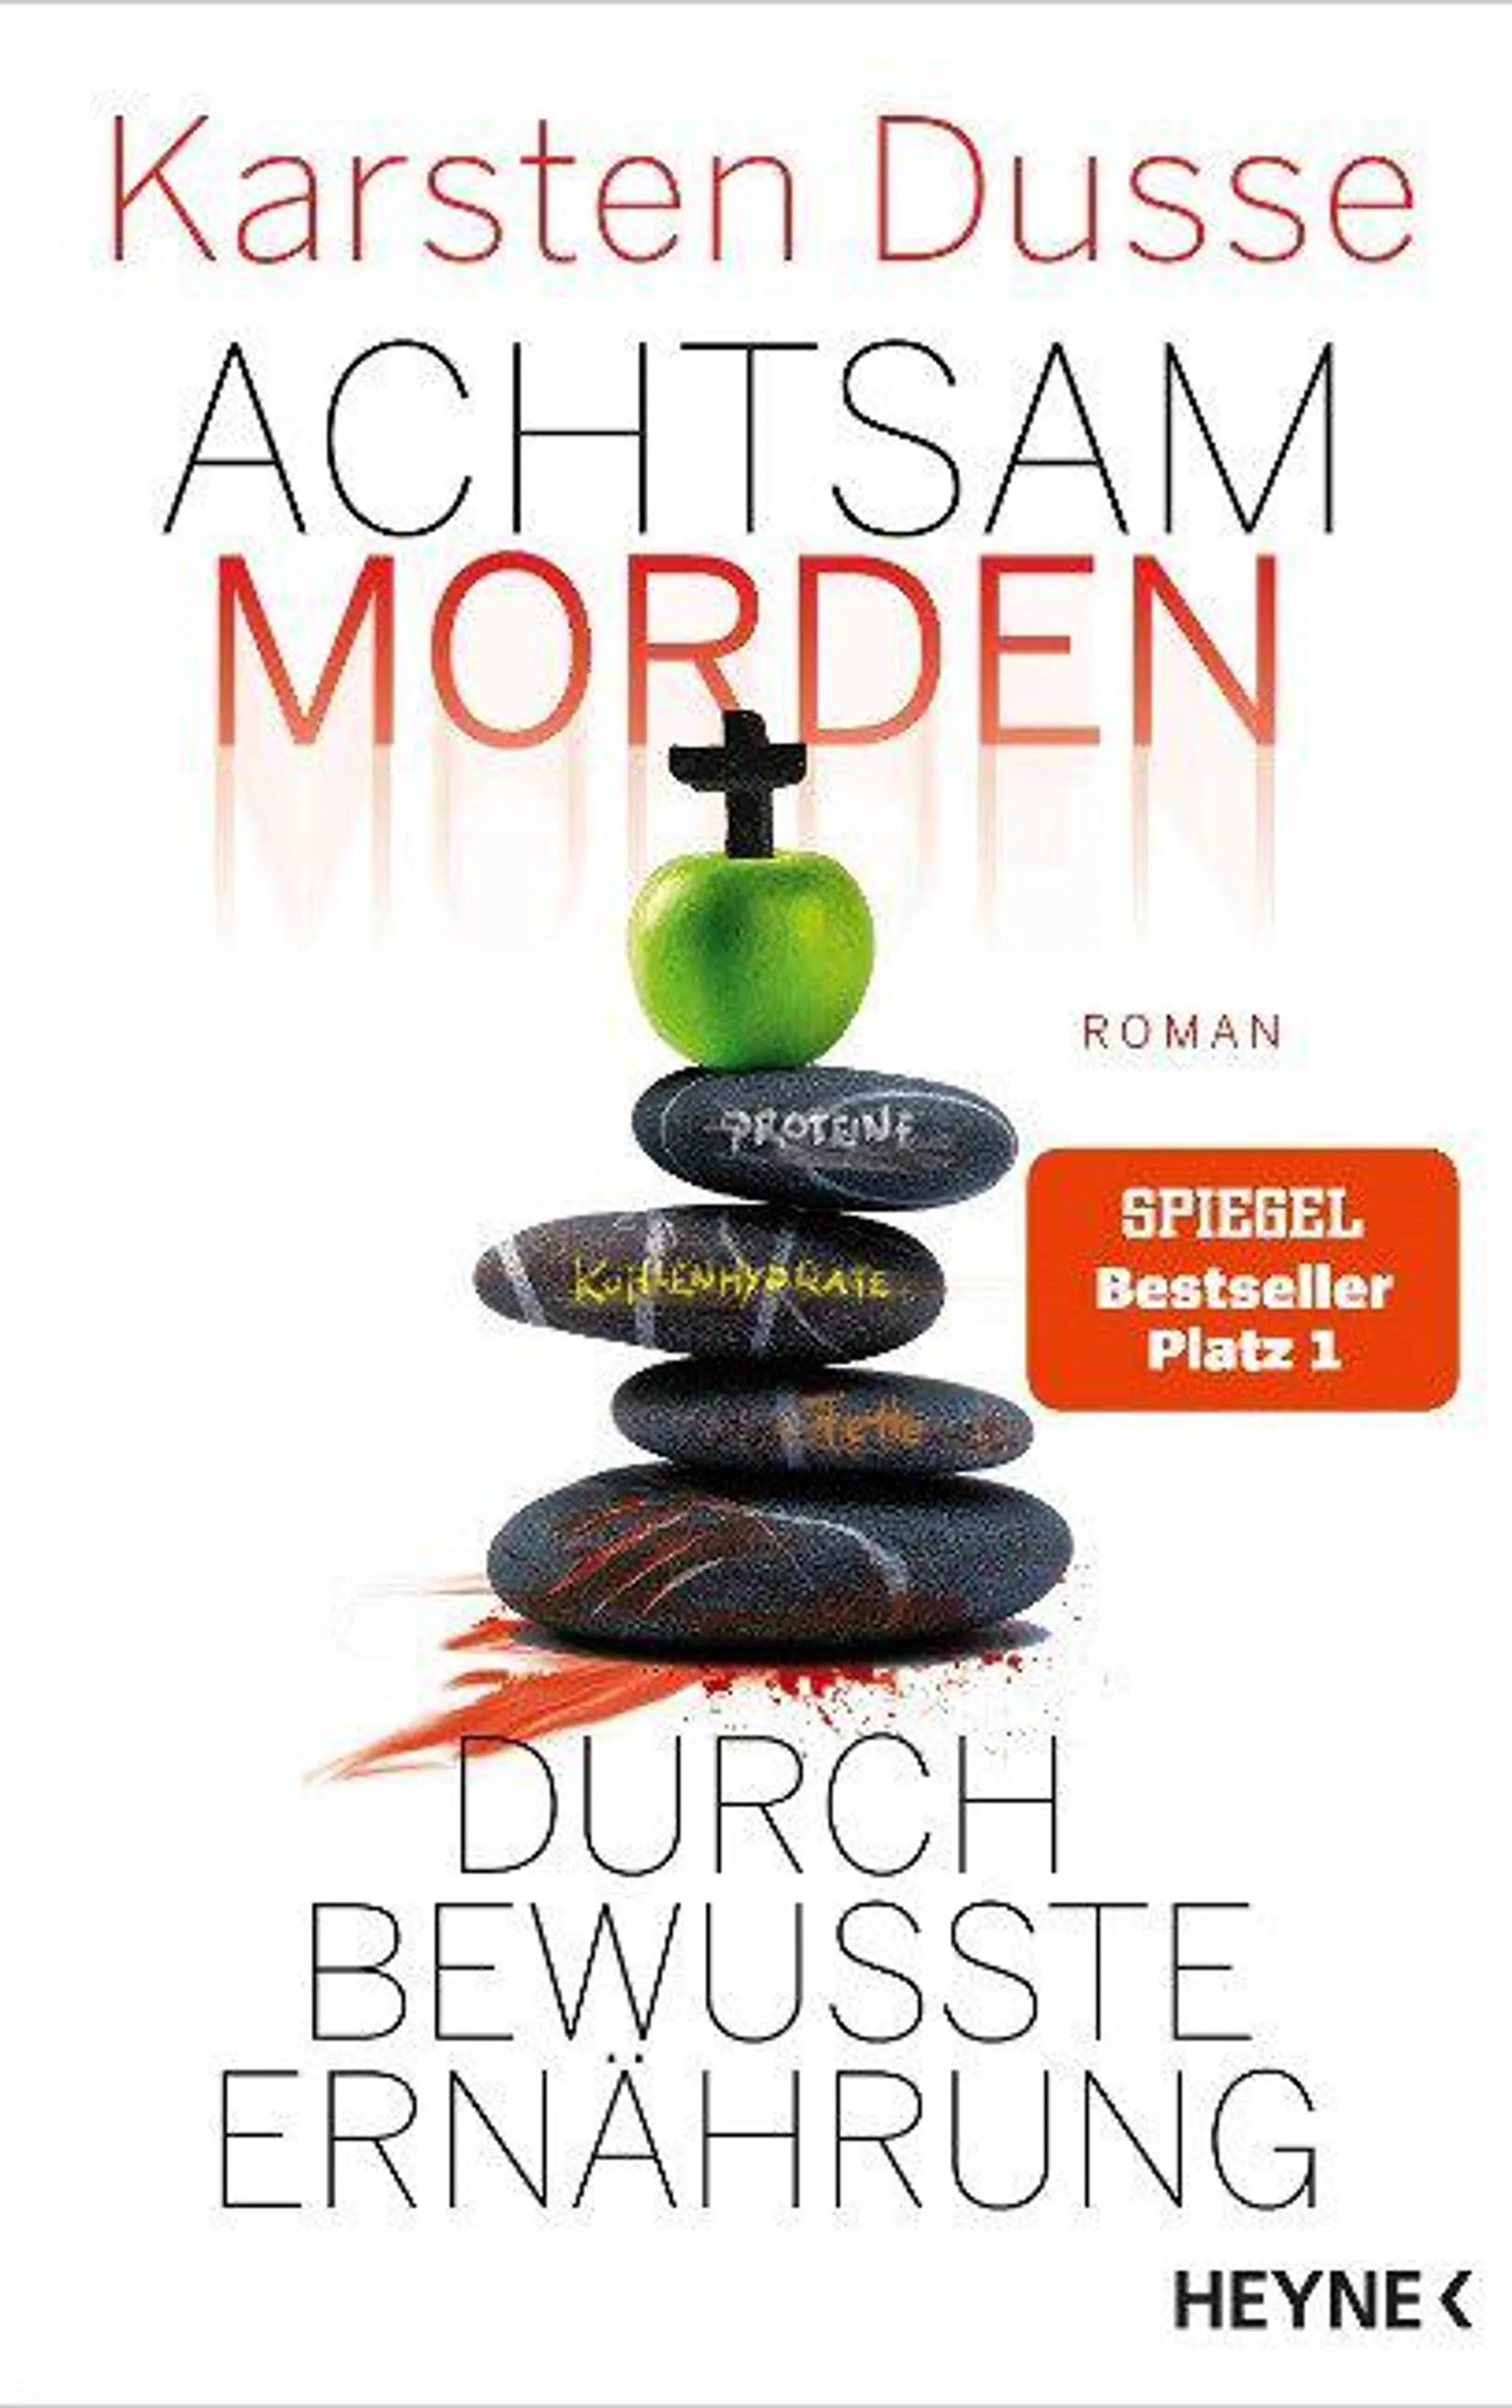 Karsten Dusse: Achtsam morden durch bewusste Ernährung (Buch) - bei Buchhandlung Heymann